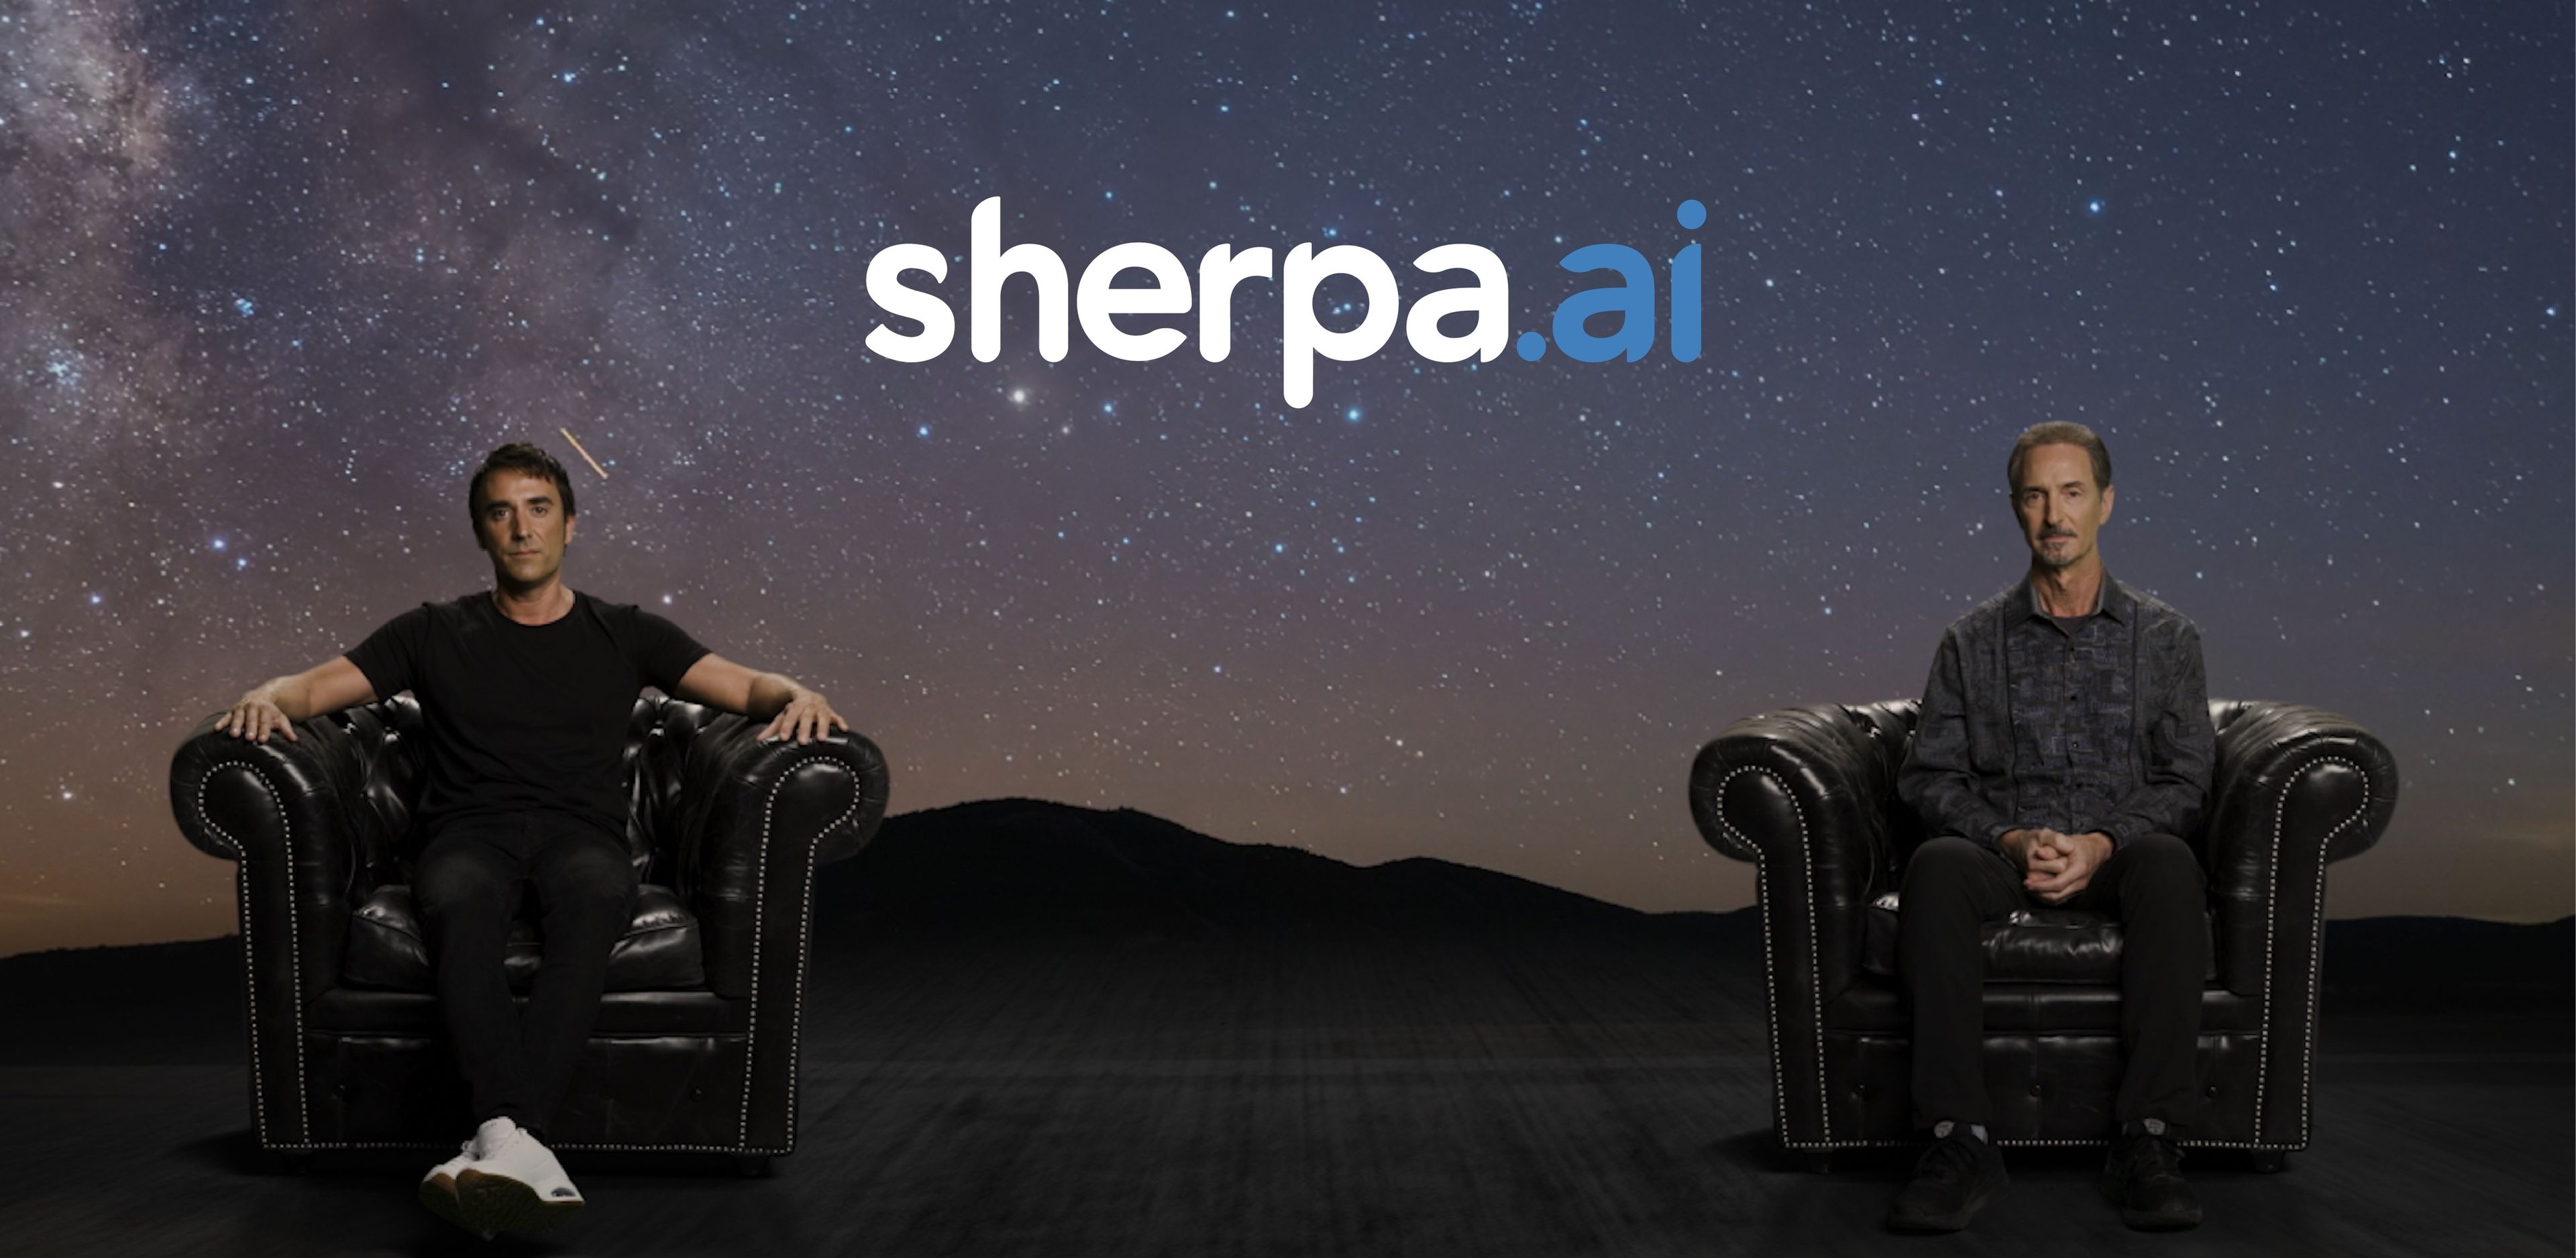 Xabi Uribe-Etxebarria, CEO y fundador de Sherpa.ai (izquierda); y Tom Gruber, Chief AI Strategy Officer de Sherpa.ai y ex CTO y fundador de Siri (derecha).